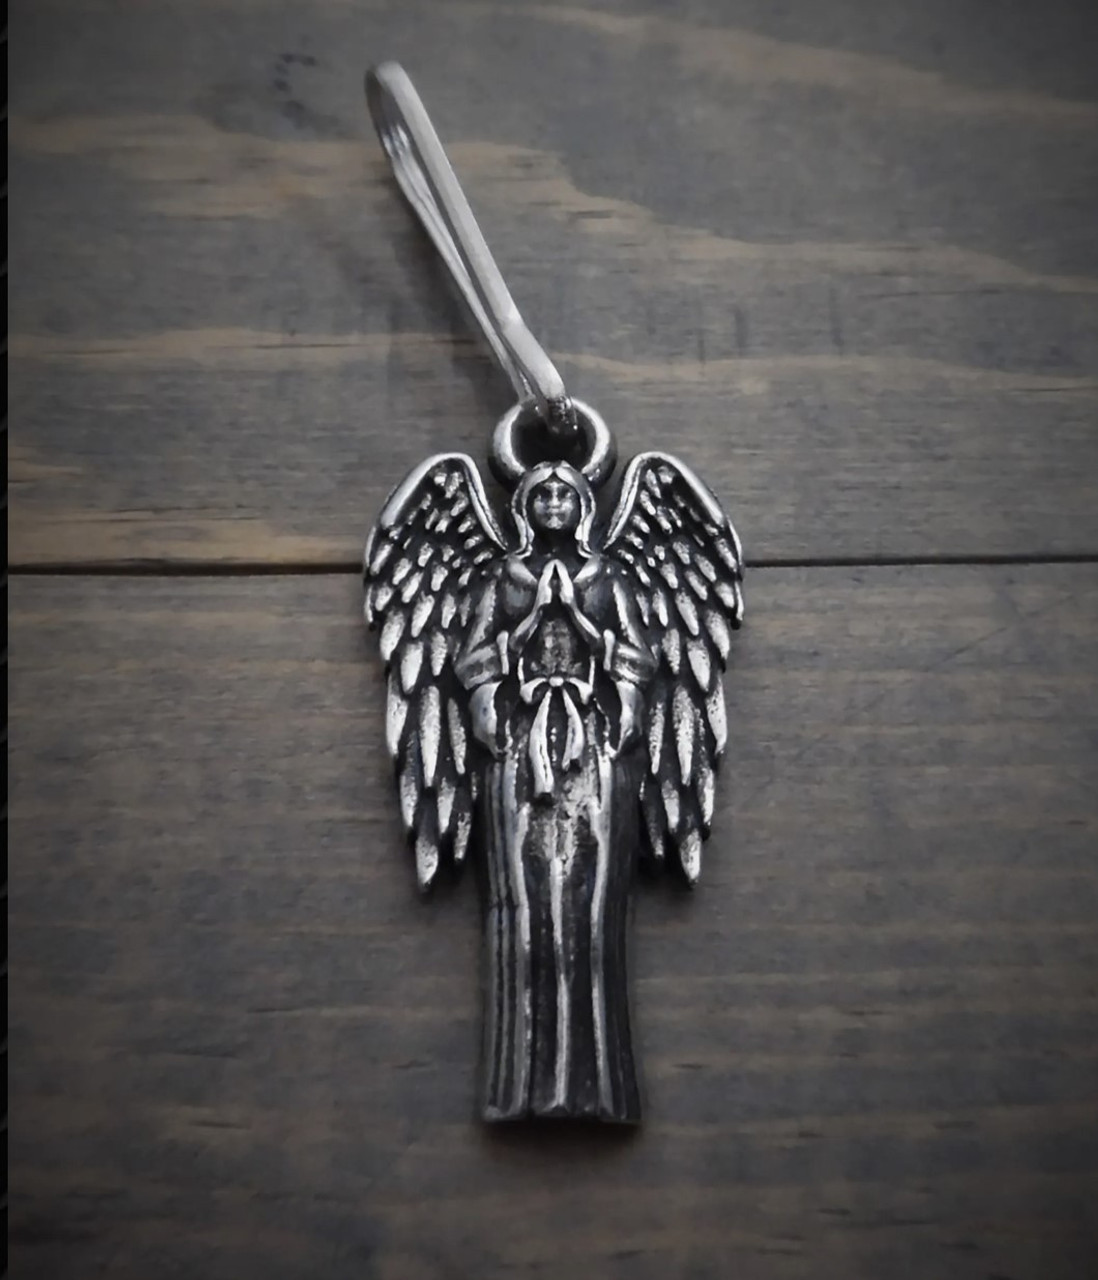 Guardian Angel Zipper Pull - Silver